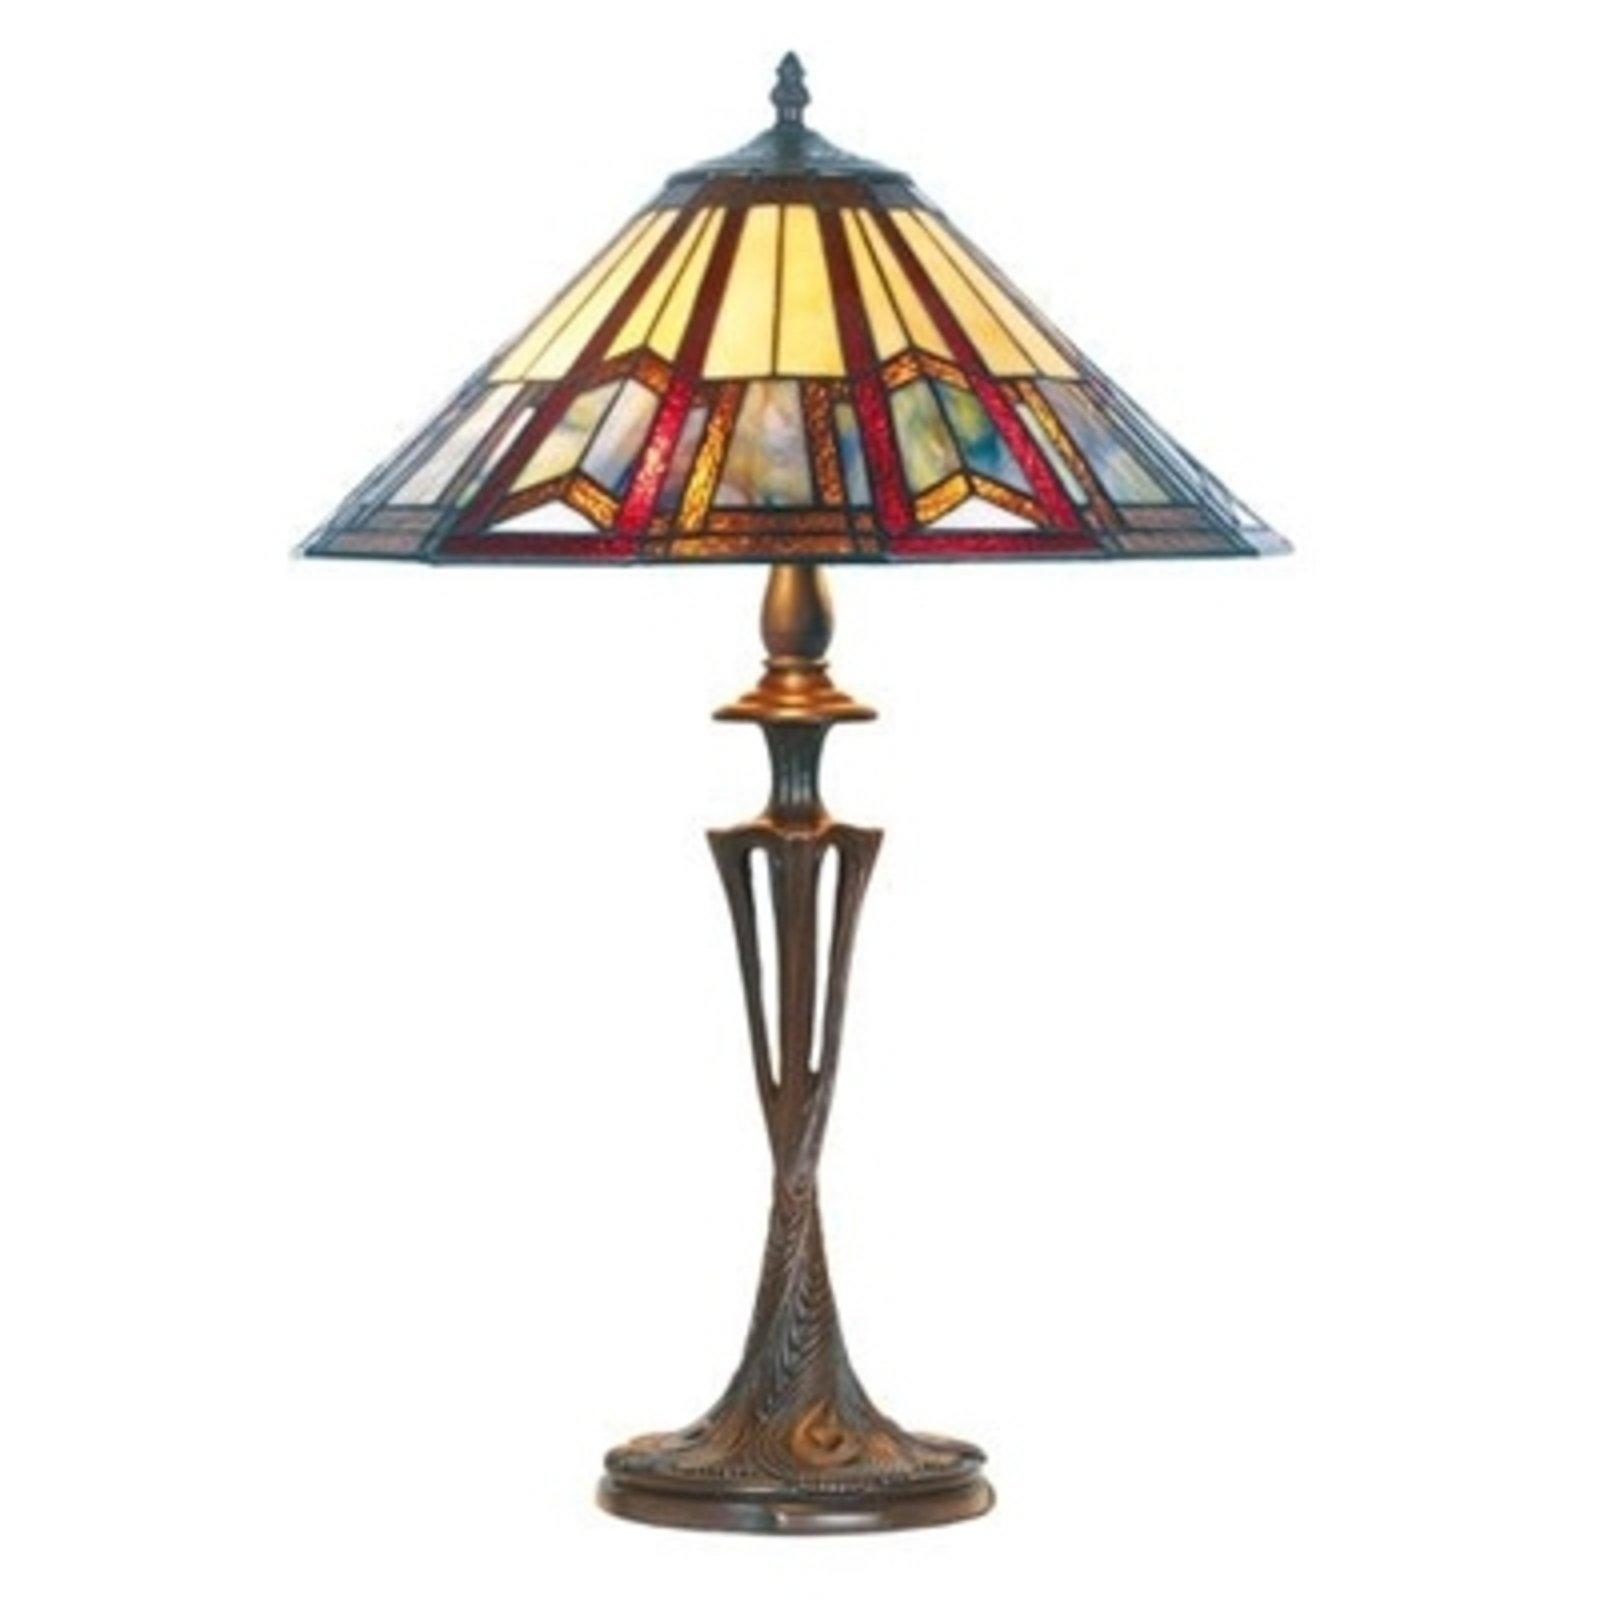 Lillie stolna lampa u Tiffany stilu